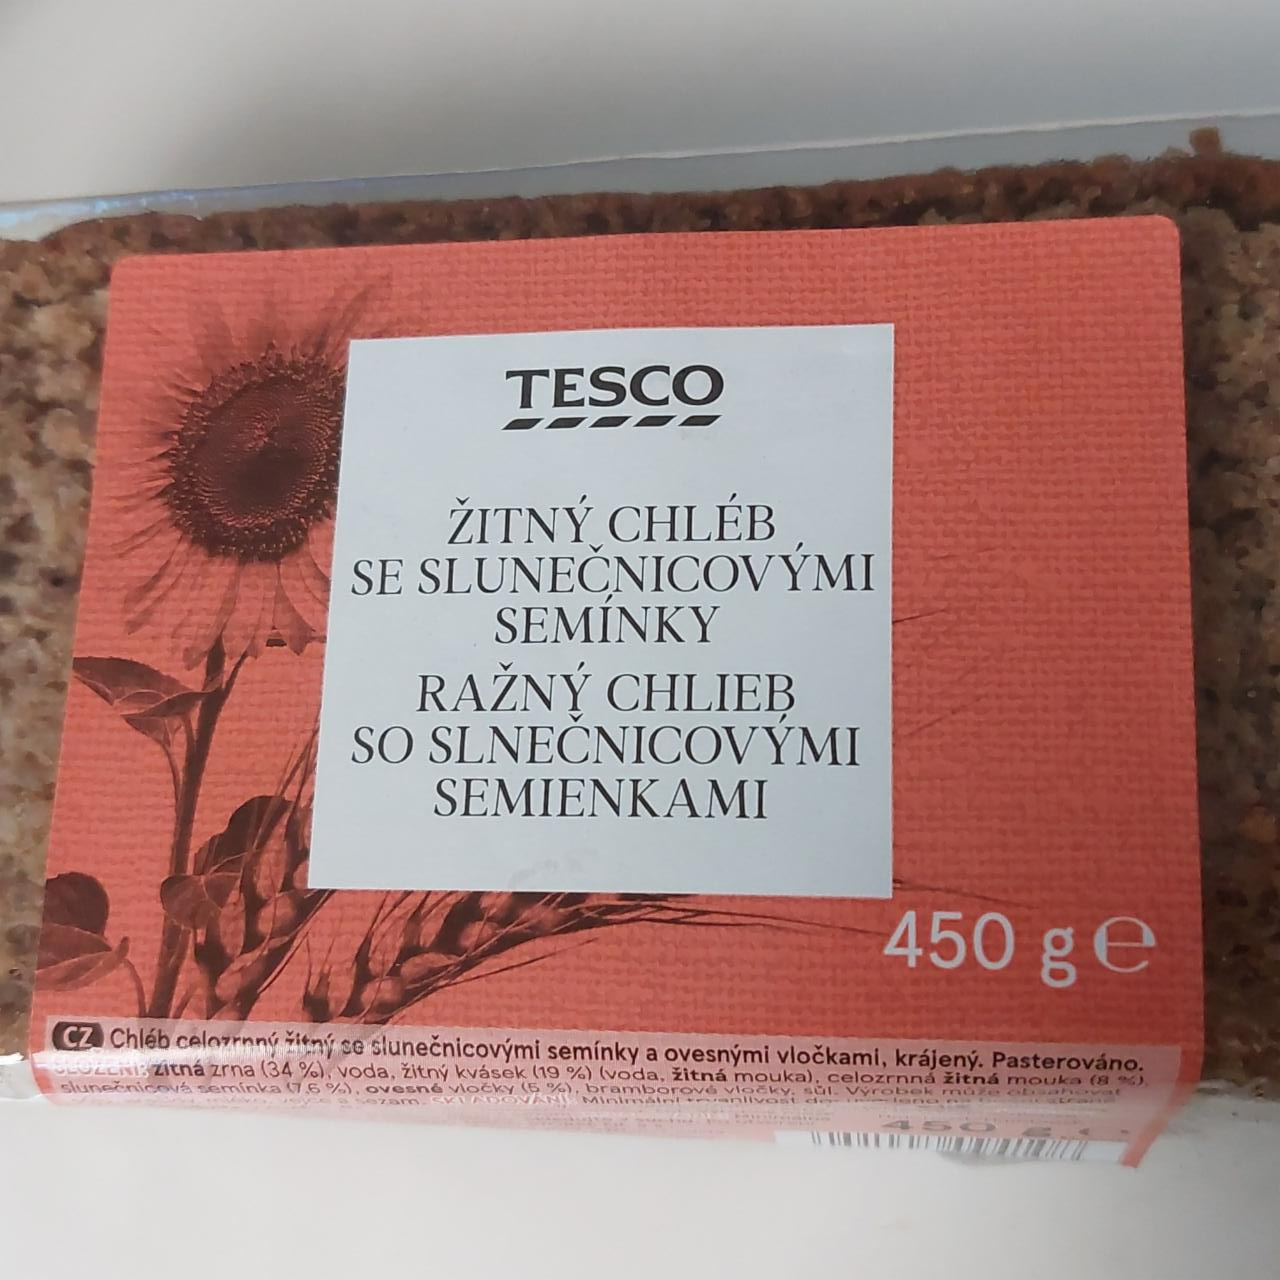 Фото - Ražný chlieb so slnečnicovými semienkami Tesco